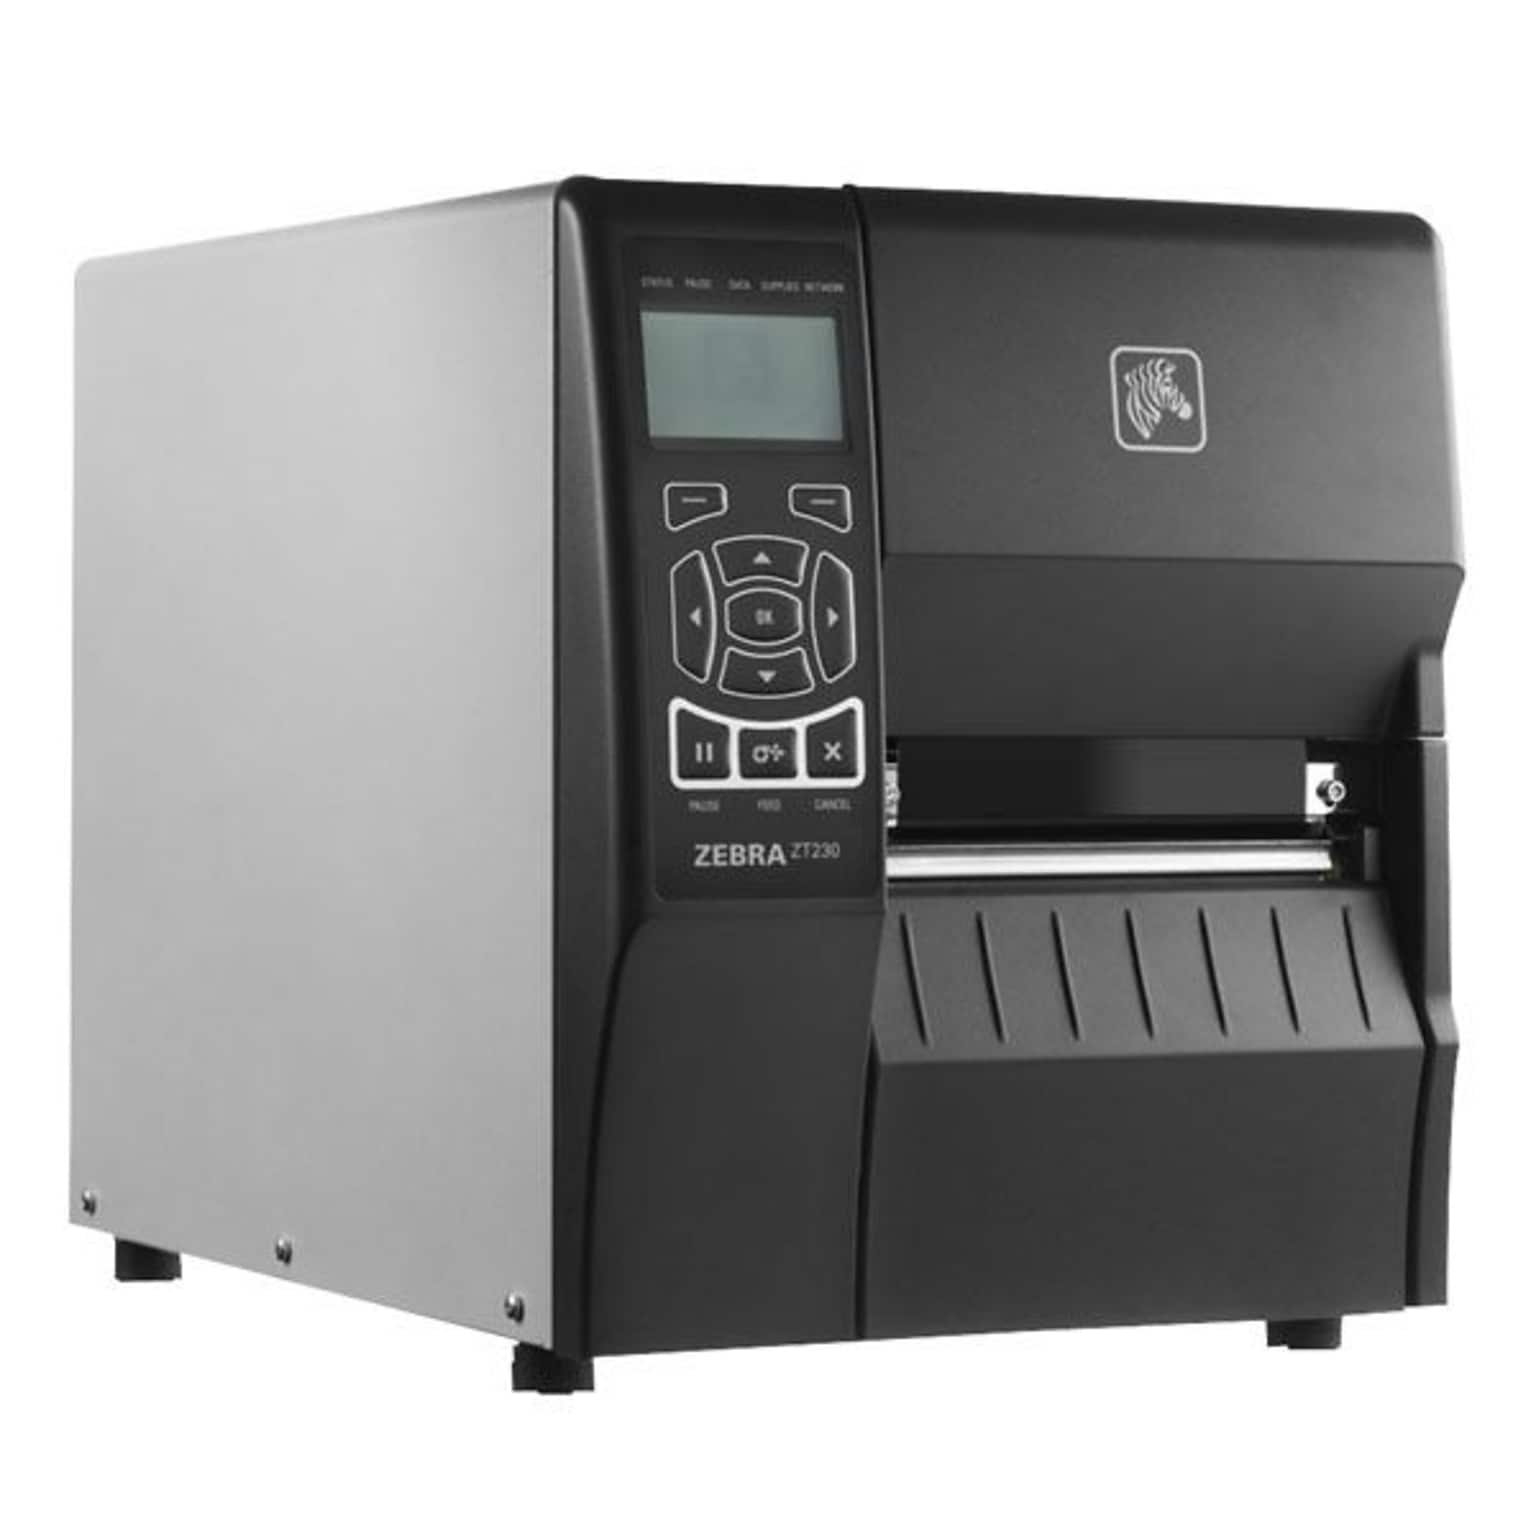 Zebra® ZT200™ Series 203Dpi Monochrome Desktop Direct Thermal/Thermal Transfer Label Printer